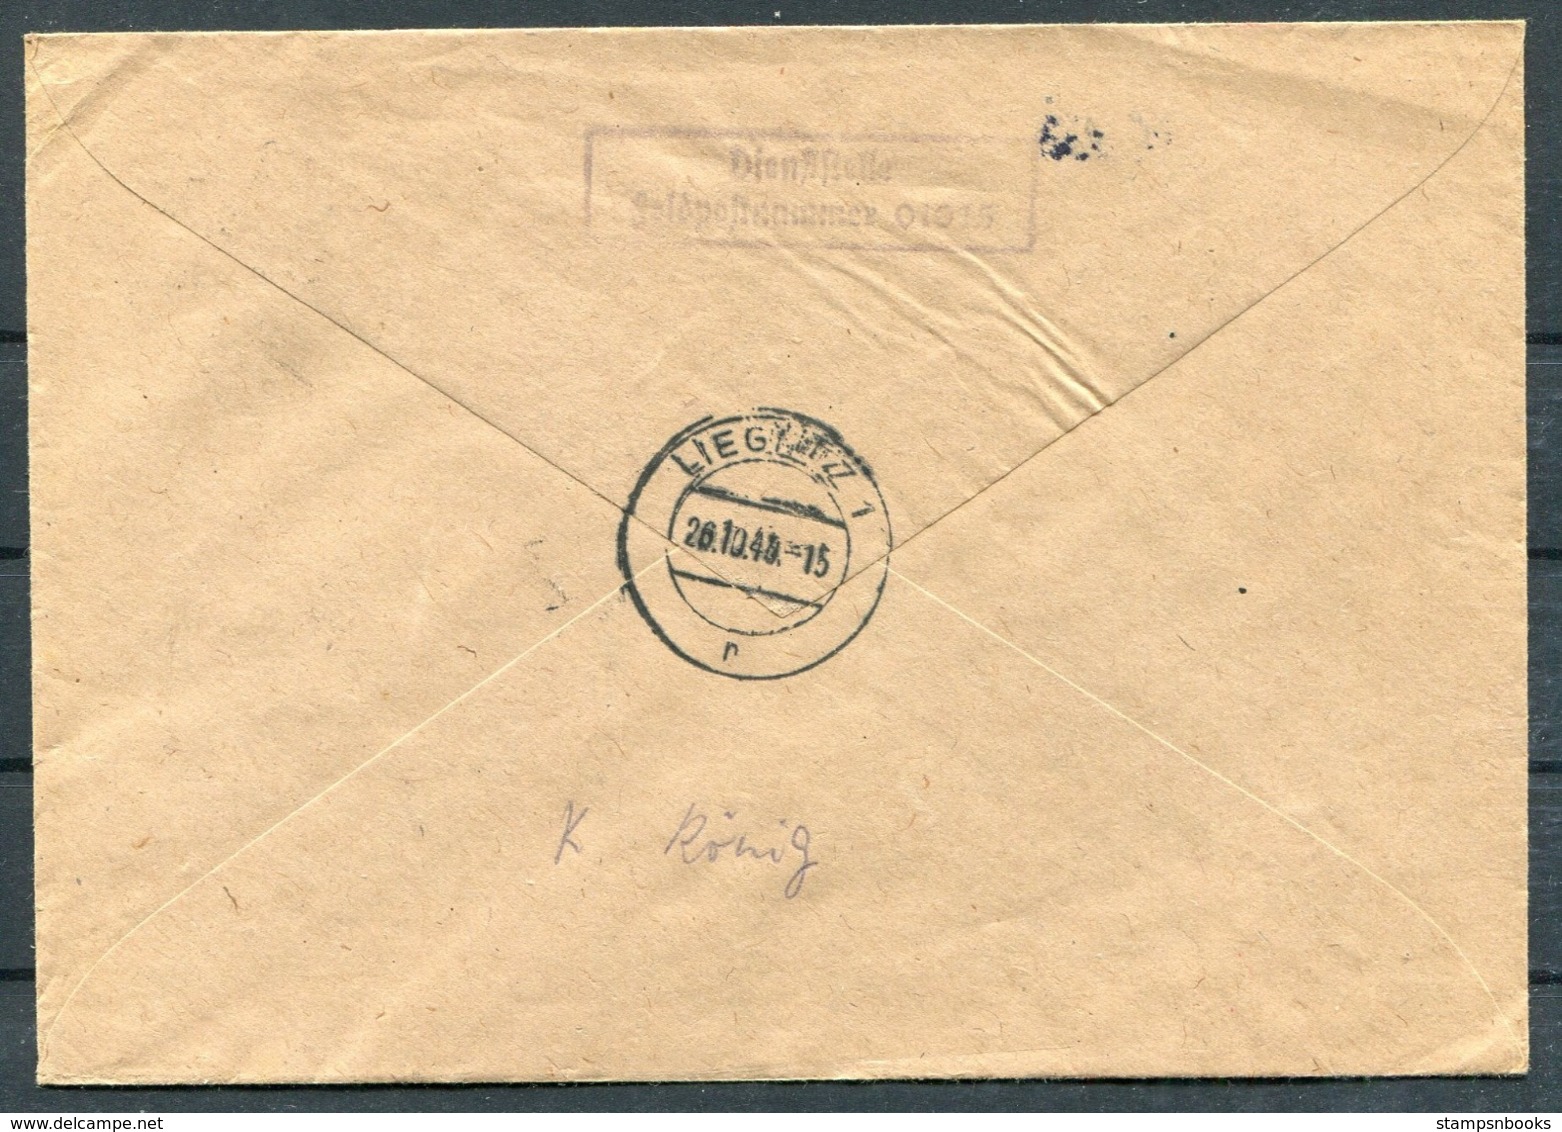 1943 Germany Einschreiben Feldpost Brief / Registered Fieldpost Cover - Liegnitz - Covers & Documents